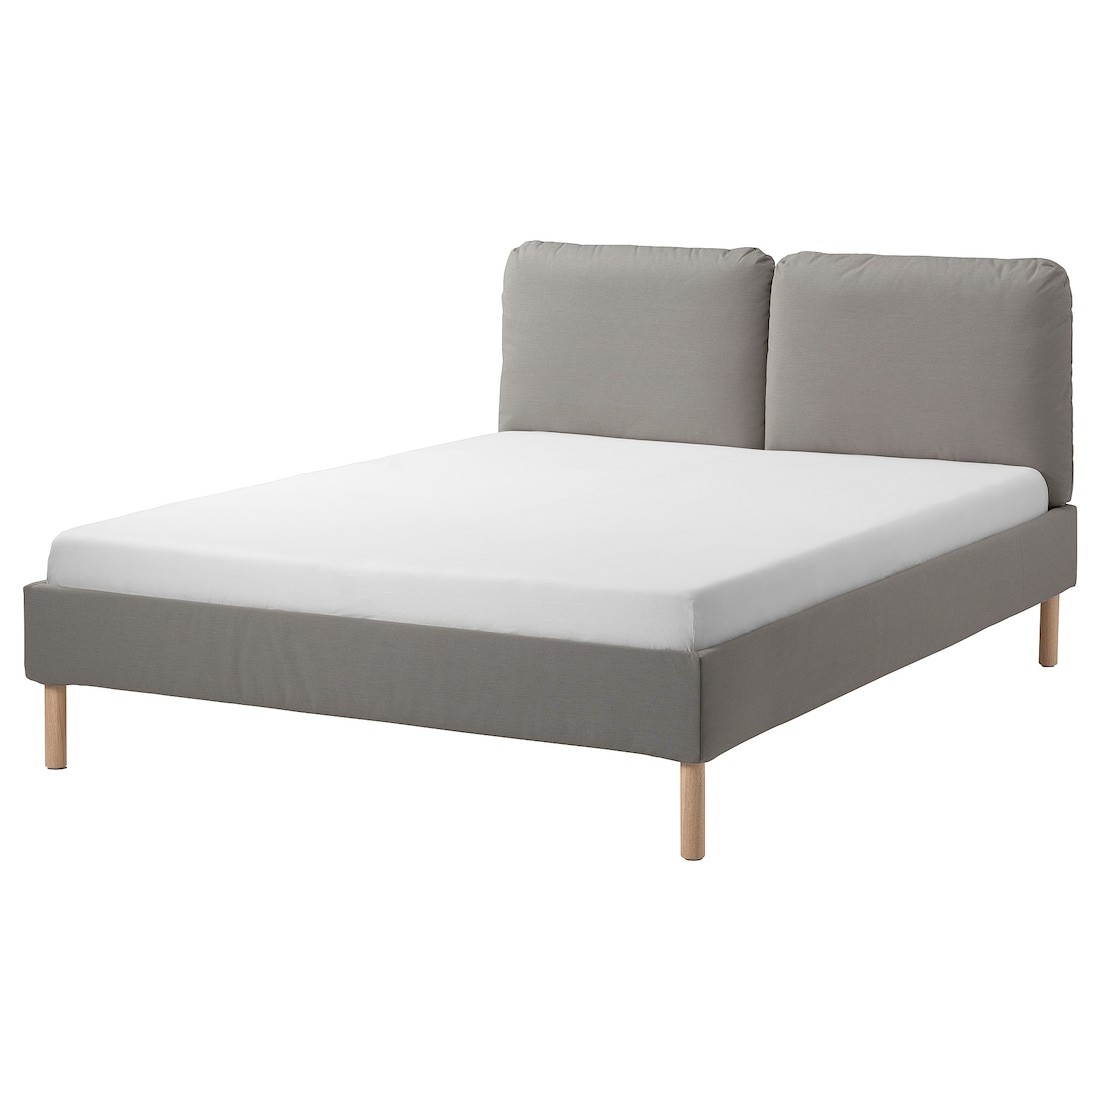 IKEA SAGESUND Кровать с обивкой, Дисерод коричневый, 160x200 см 30490380 304.903.80